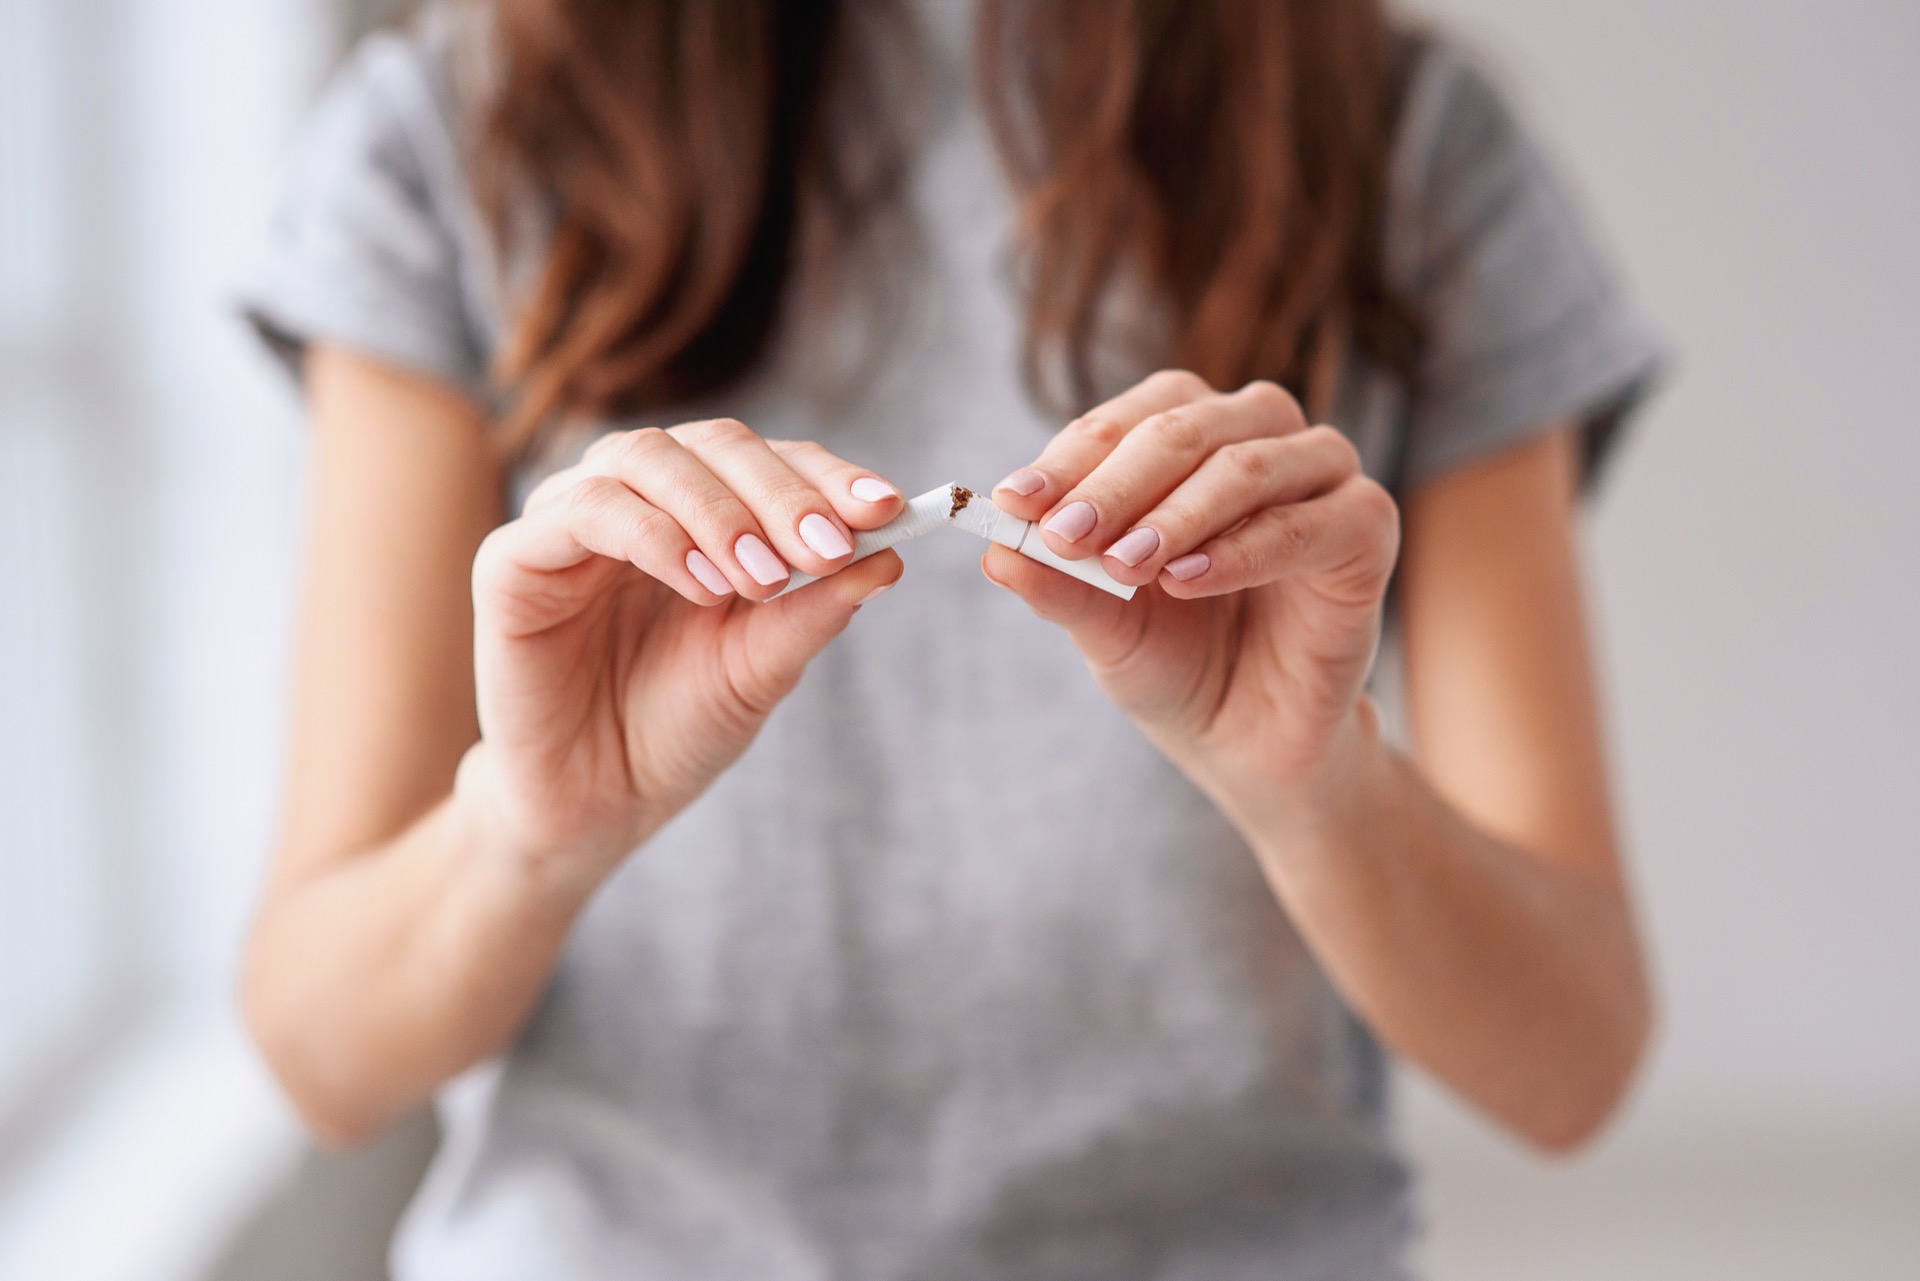 Le tabac expose à des problèmes santé graves. © gorynvd, Adobe Stock